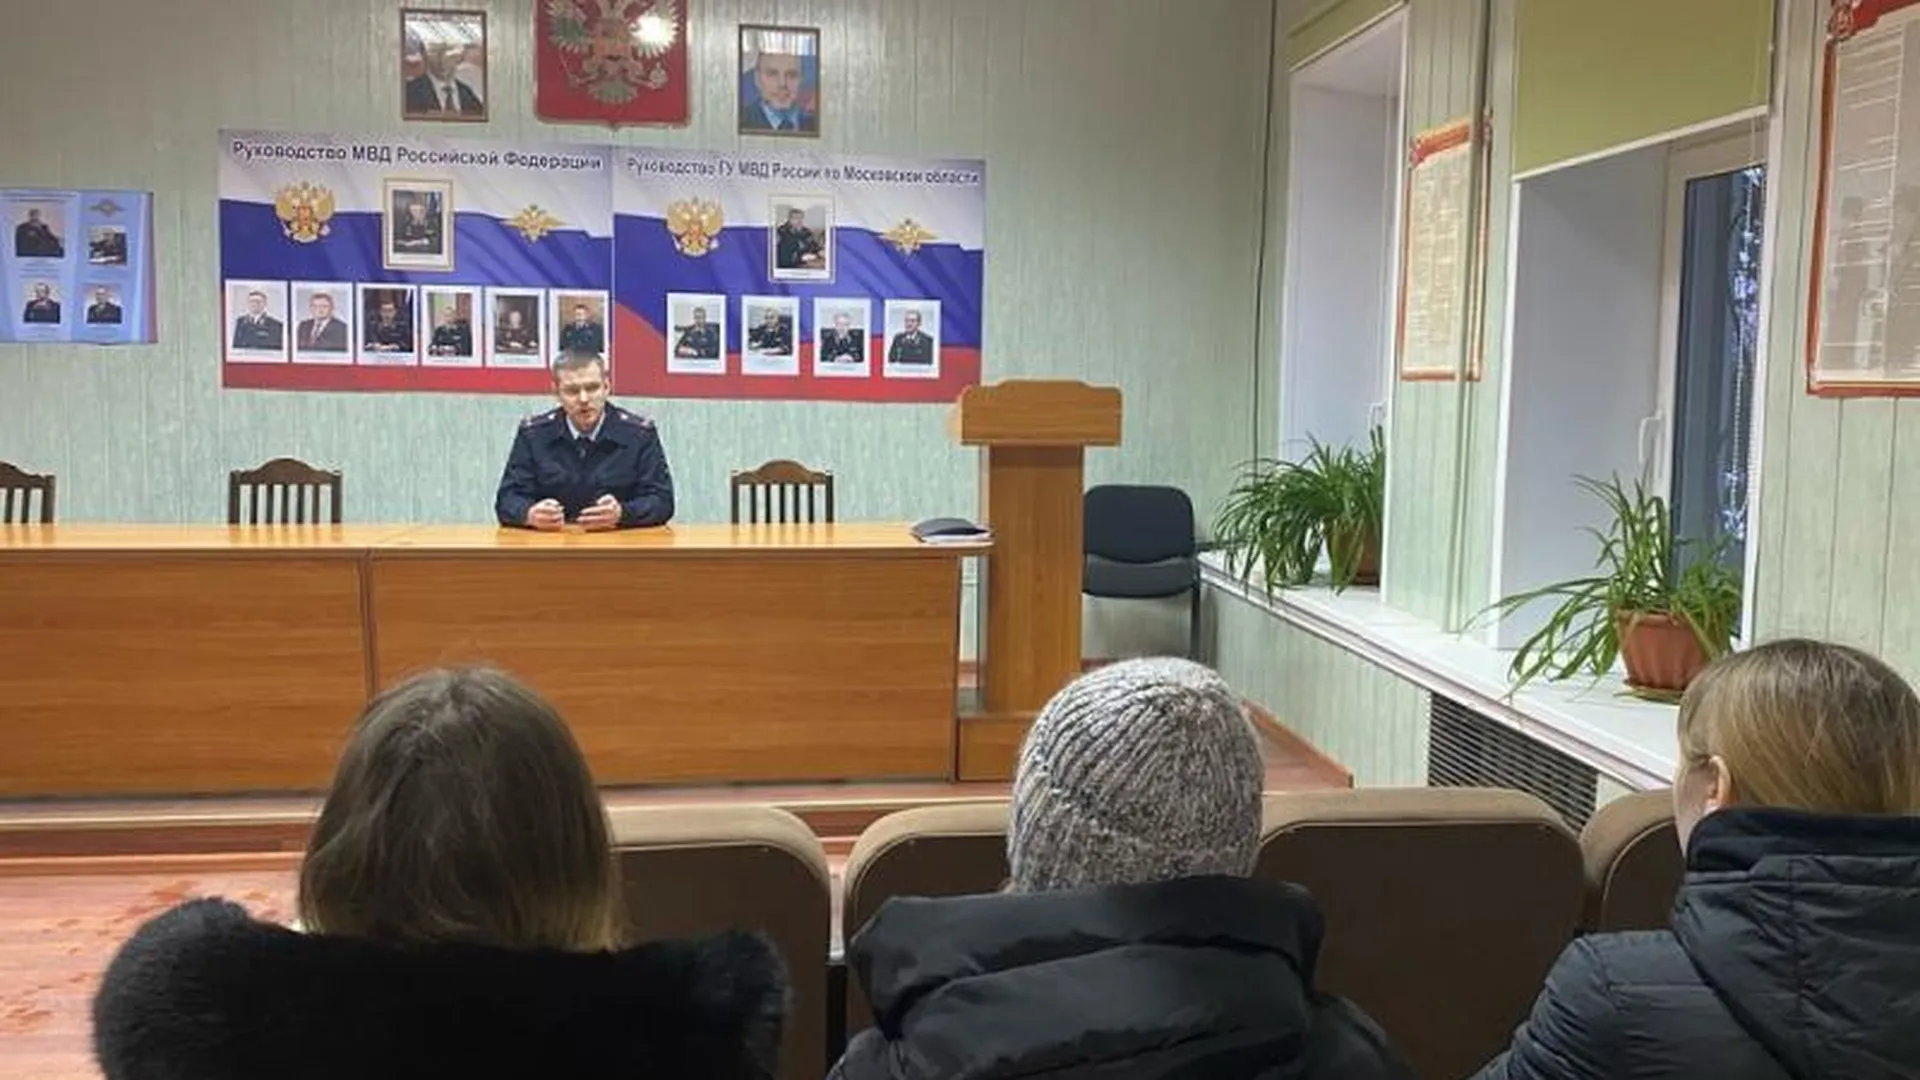 Полицейские Можайска рассказали учащимся об особенностях работы в органах внутренних дел